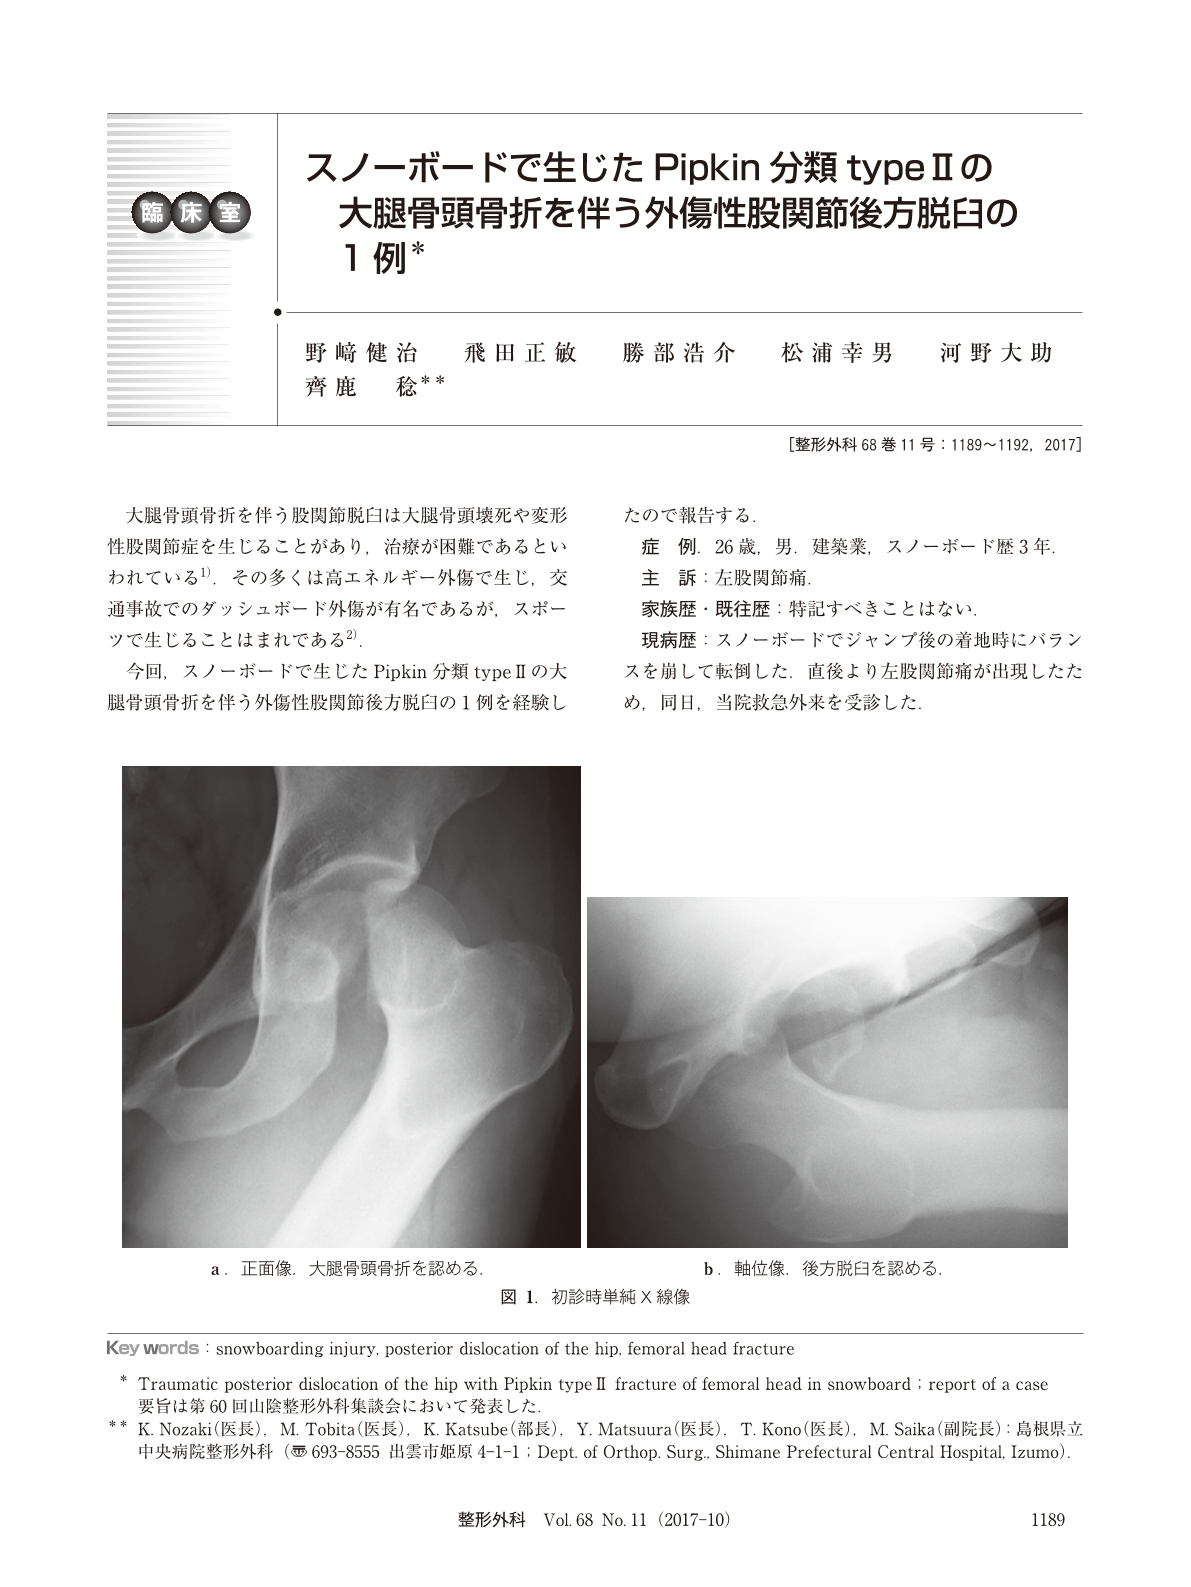 スノーボードで生じたpipkin分類type Iiの大腿骨頭骨折を伴う外傷性股関節後方脱臼の1例 臨床雑誌整形外科 68巻11号 医書 Jp